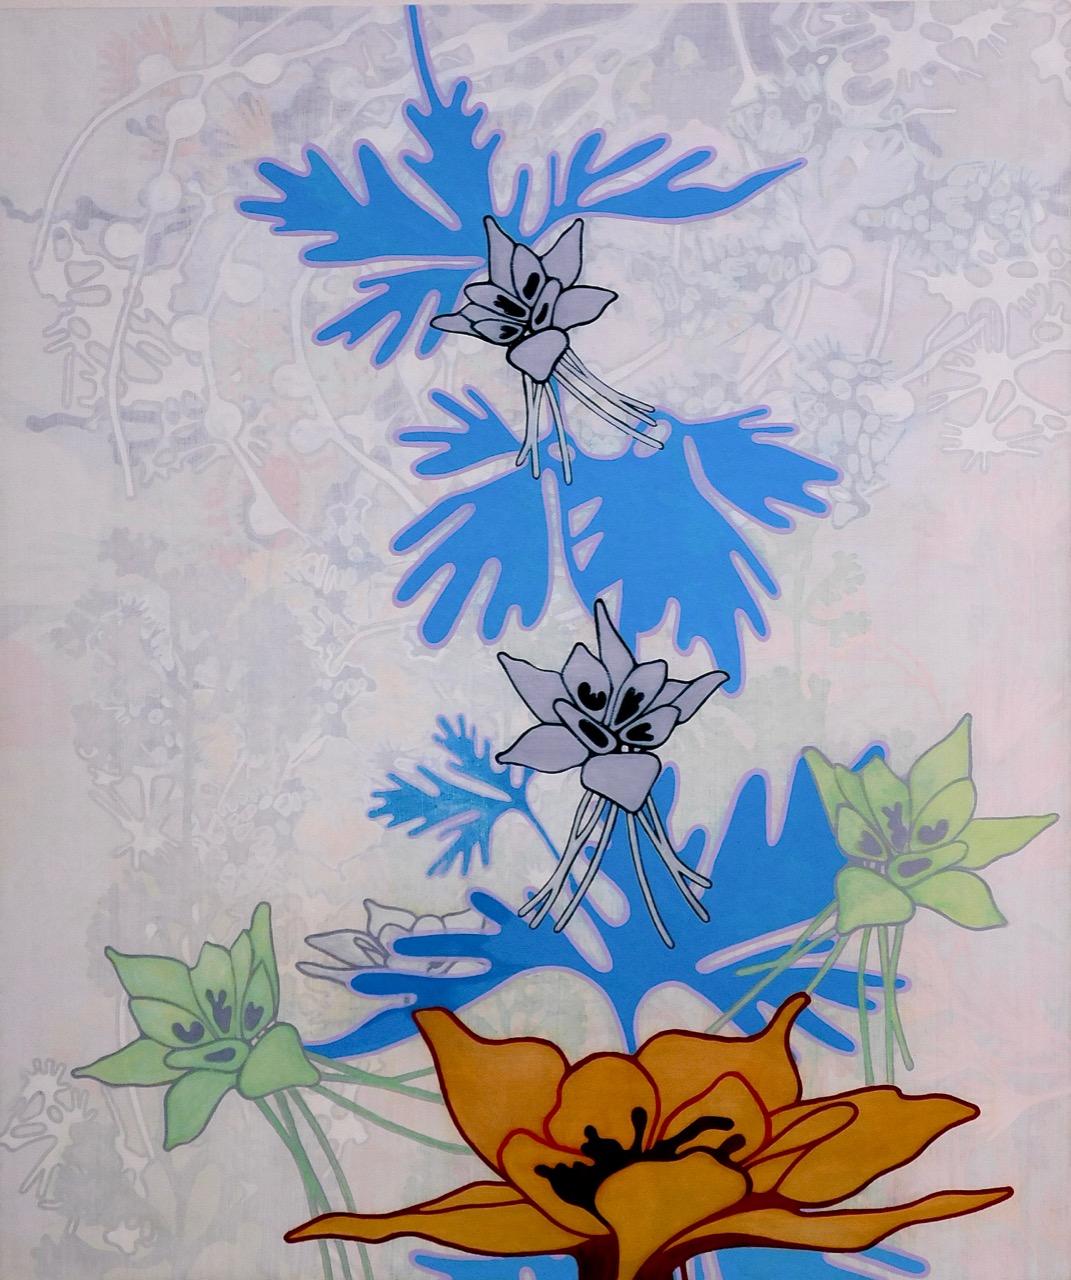 #23-02 - Contemporain / Peinture florale abstraite / Bleu